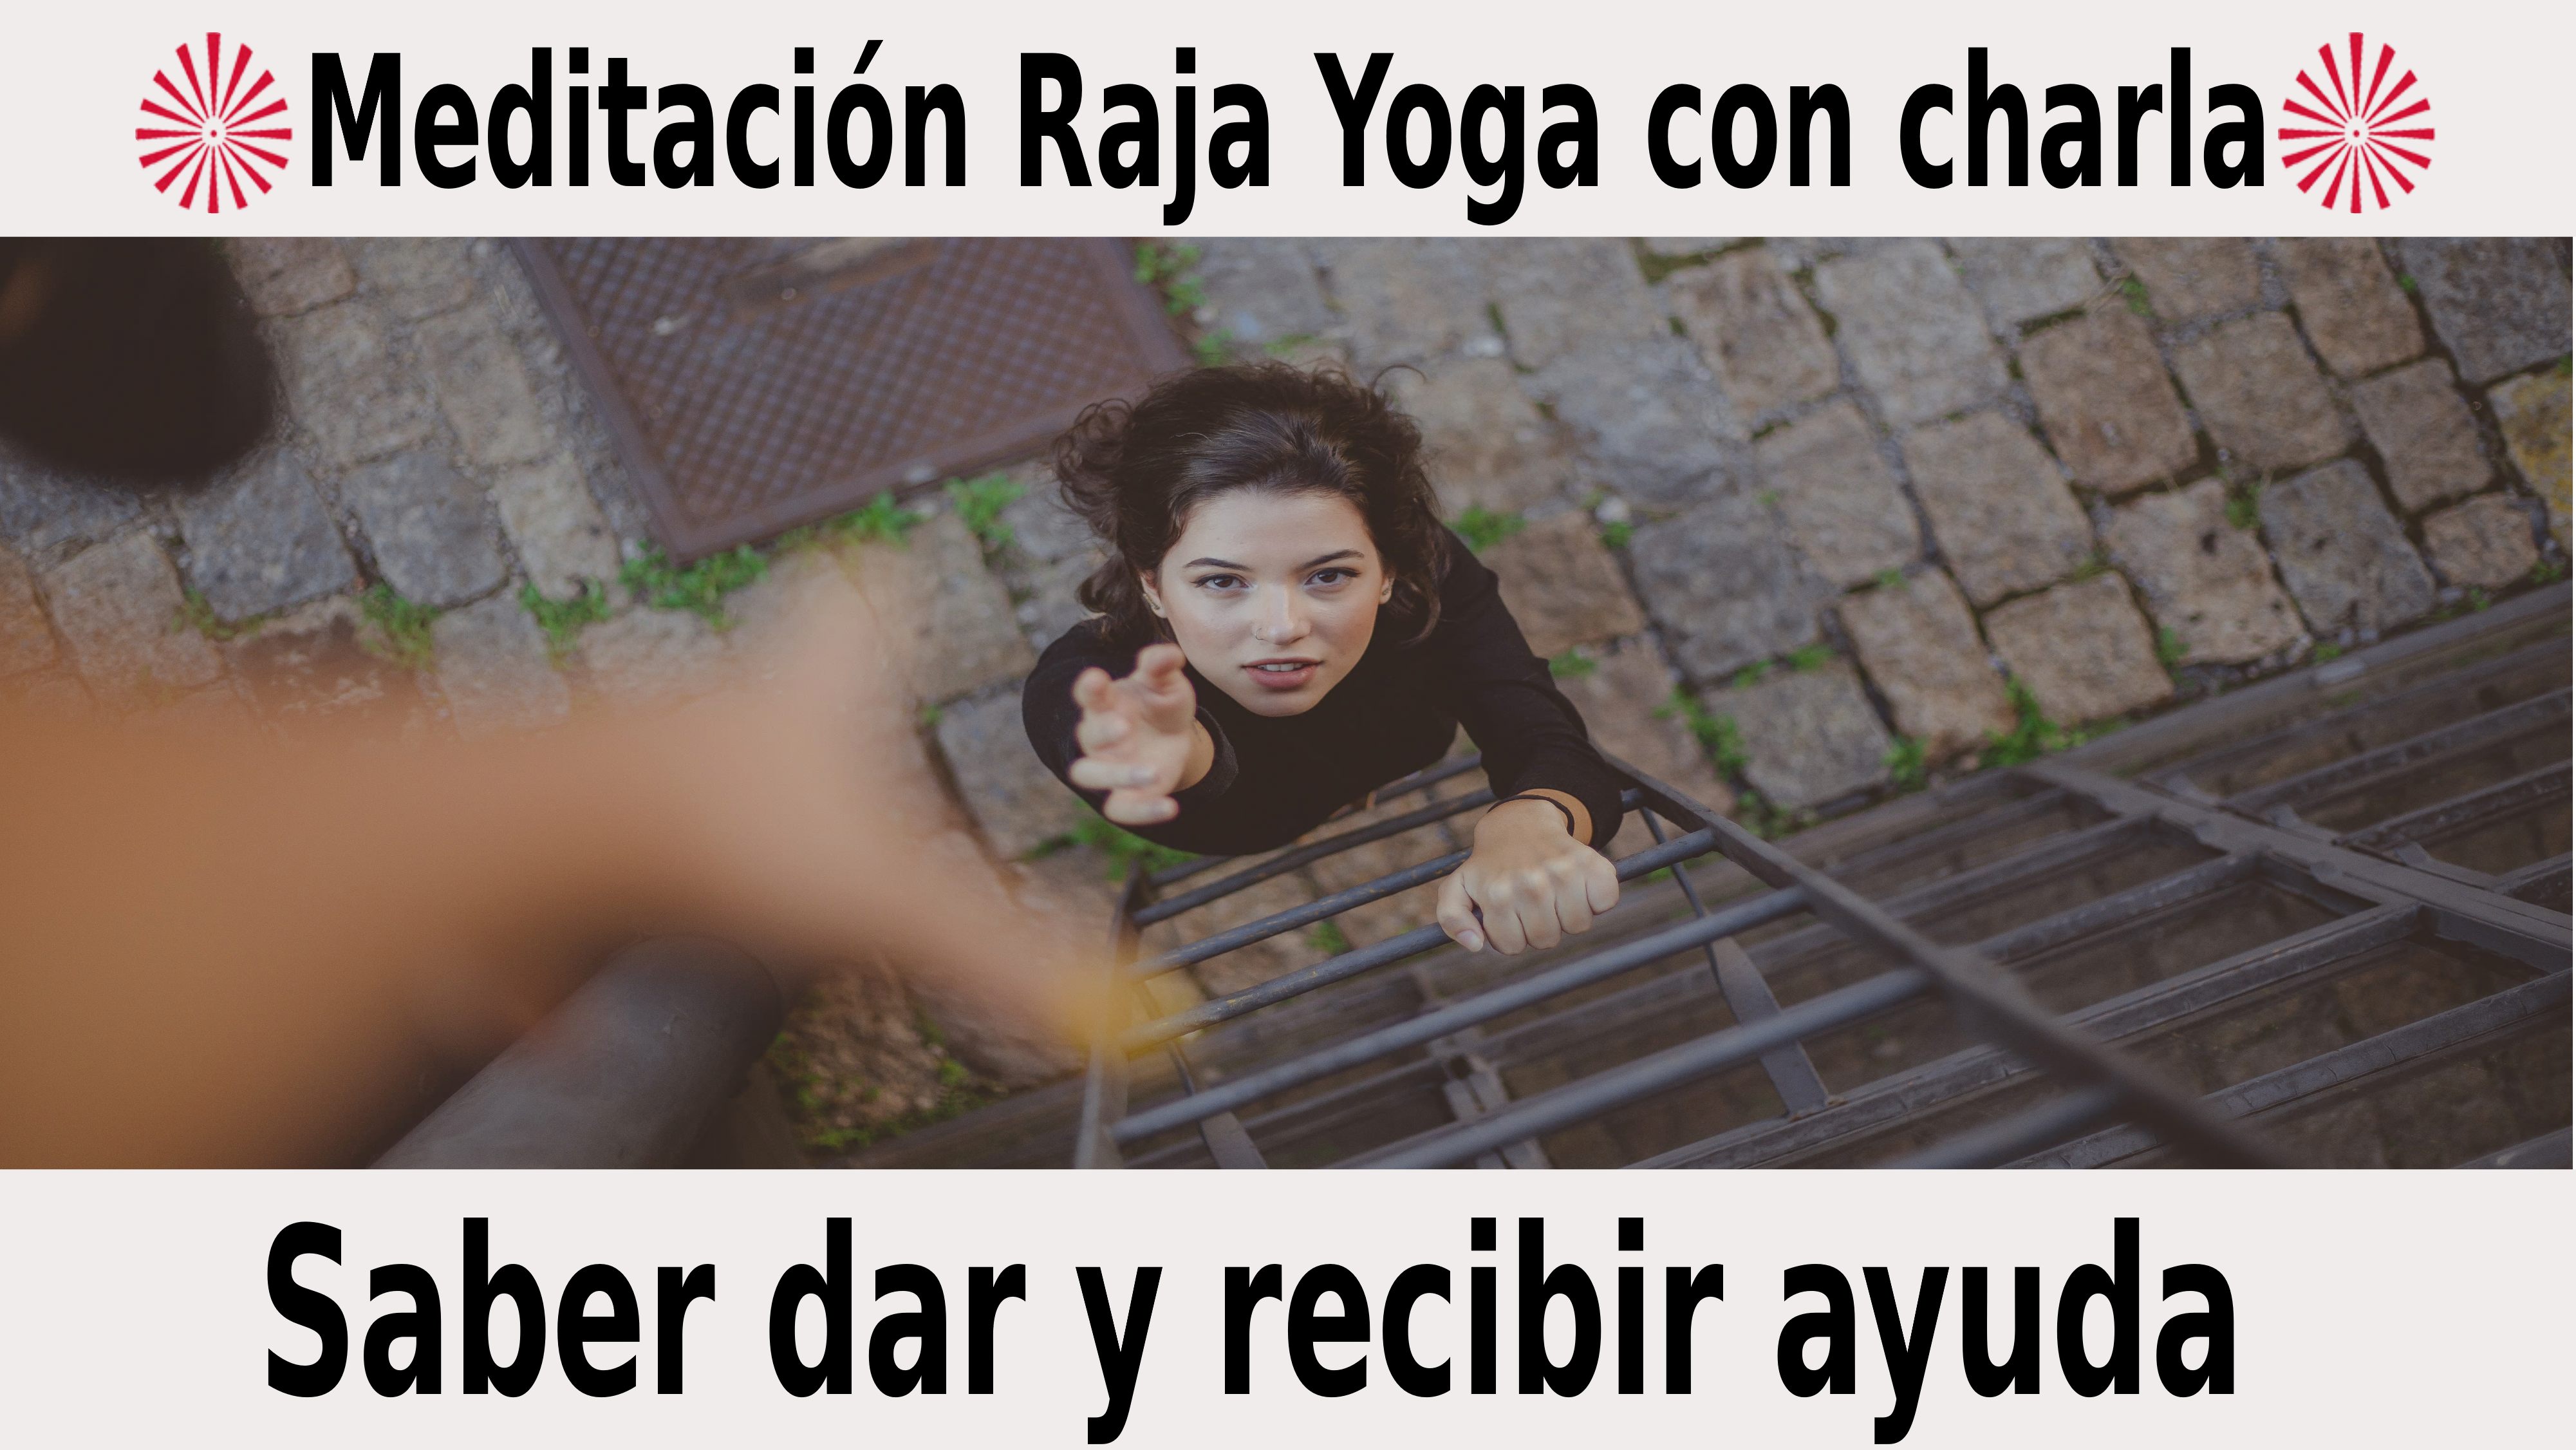 Meditación Raja Yoga con charla: Saber dar y recibir ayuda (29 Noviembre 2020) On-line desde Valencia